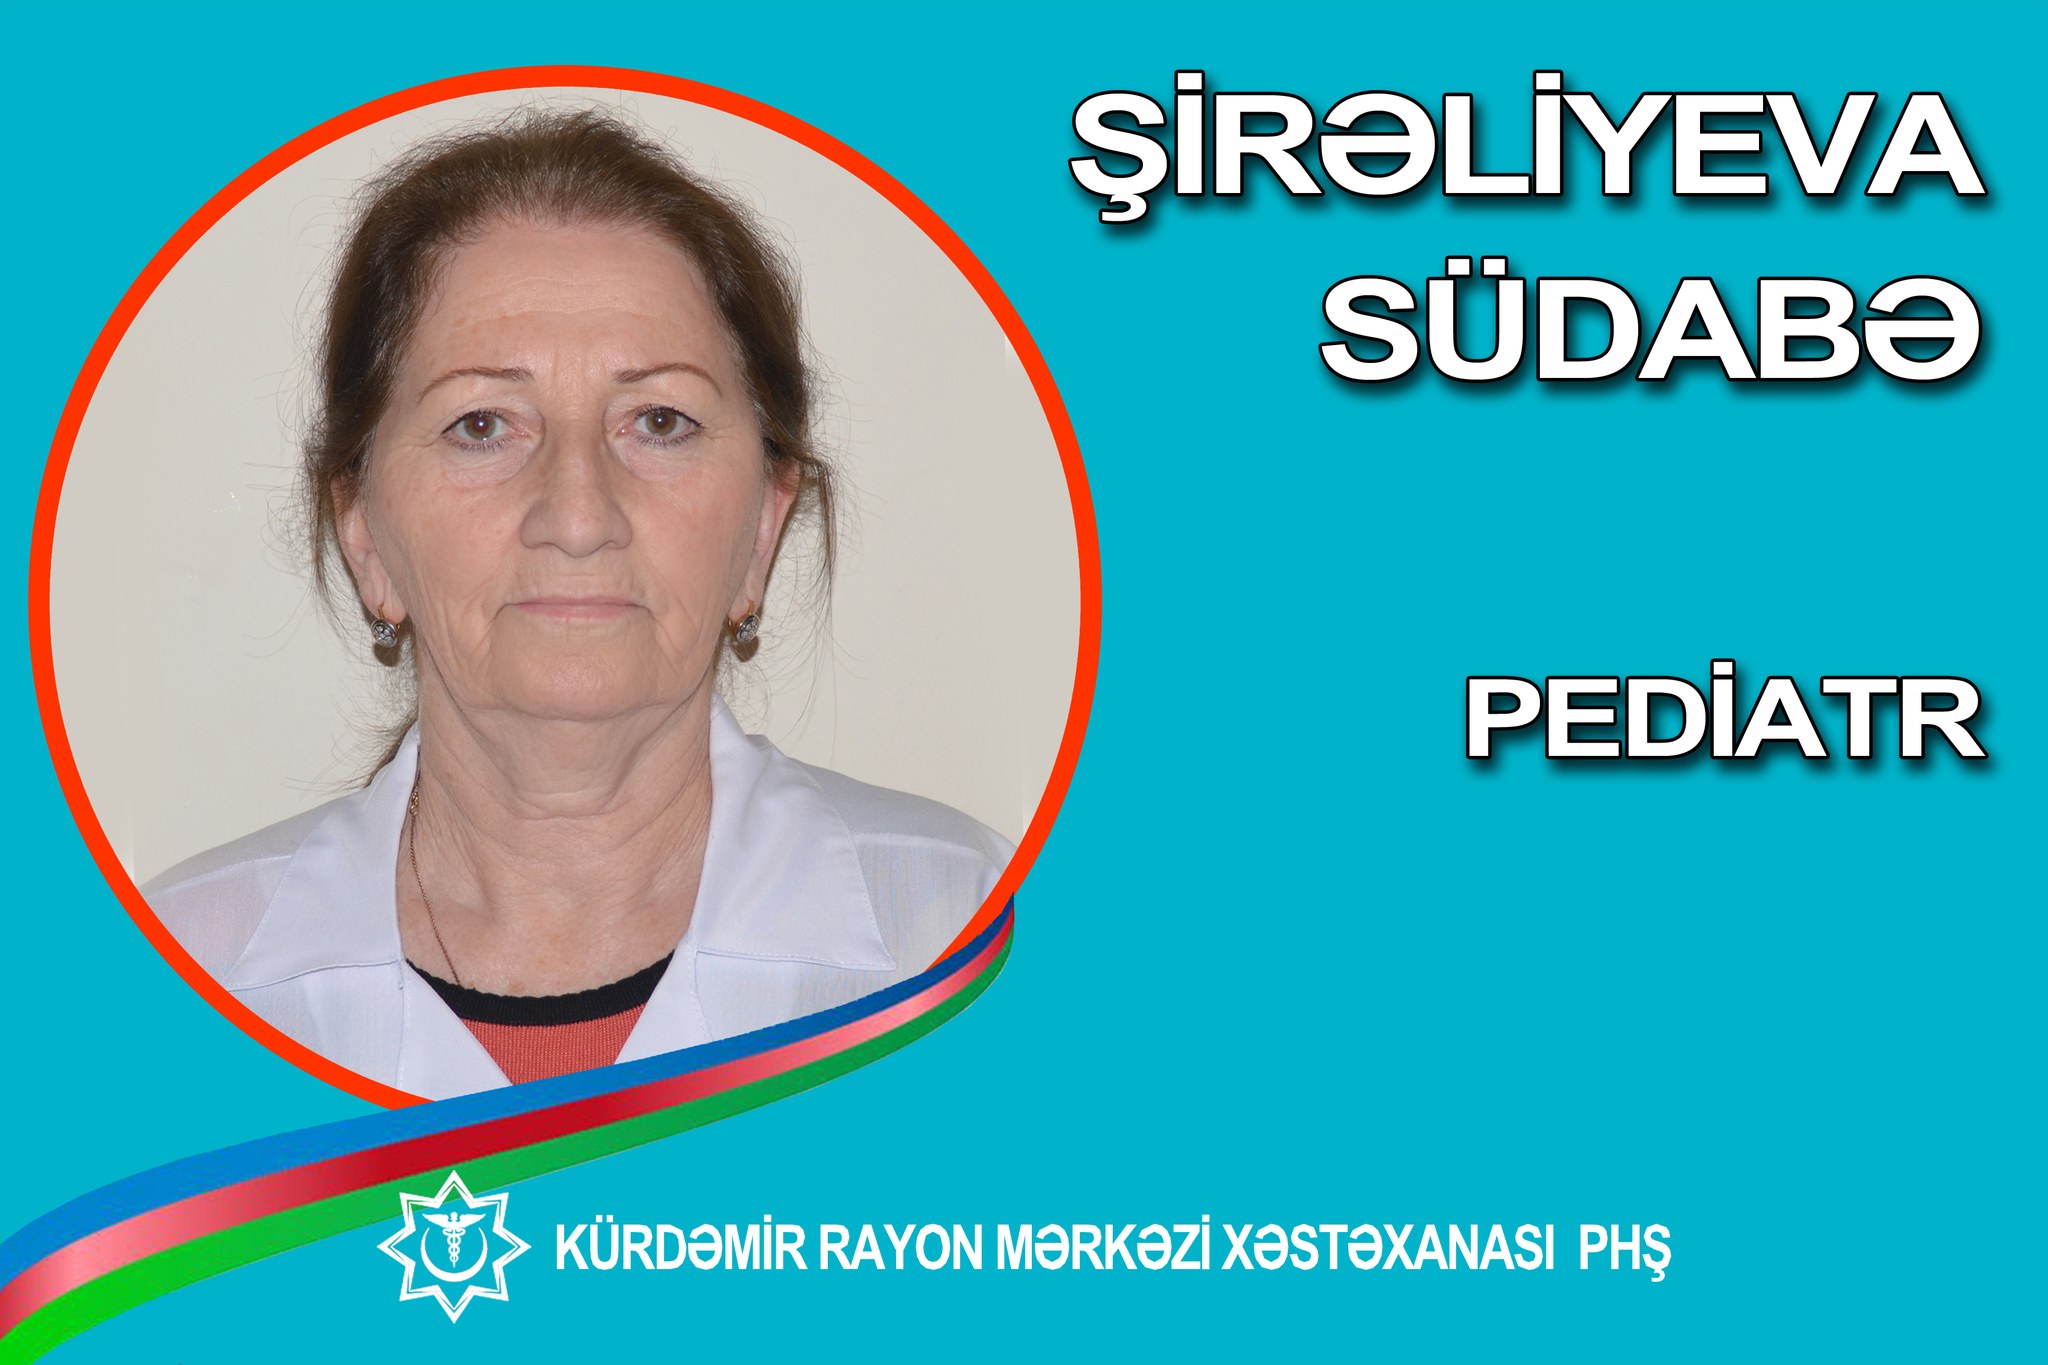 45 ildir Kürdəmir Rayon Mərkəzi Xəstəxanasında çalışan pediatr - Südabə Şirəliyeva